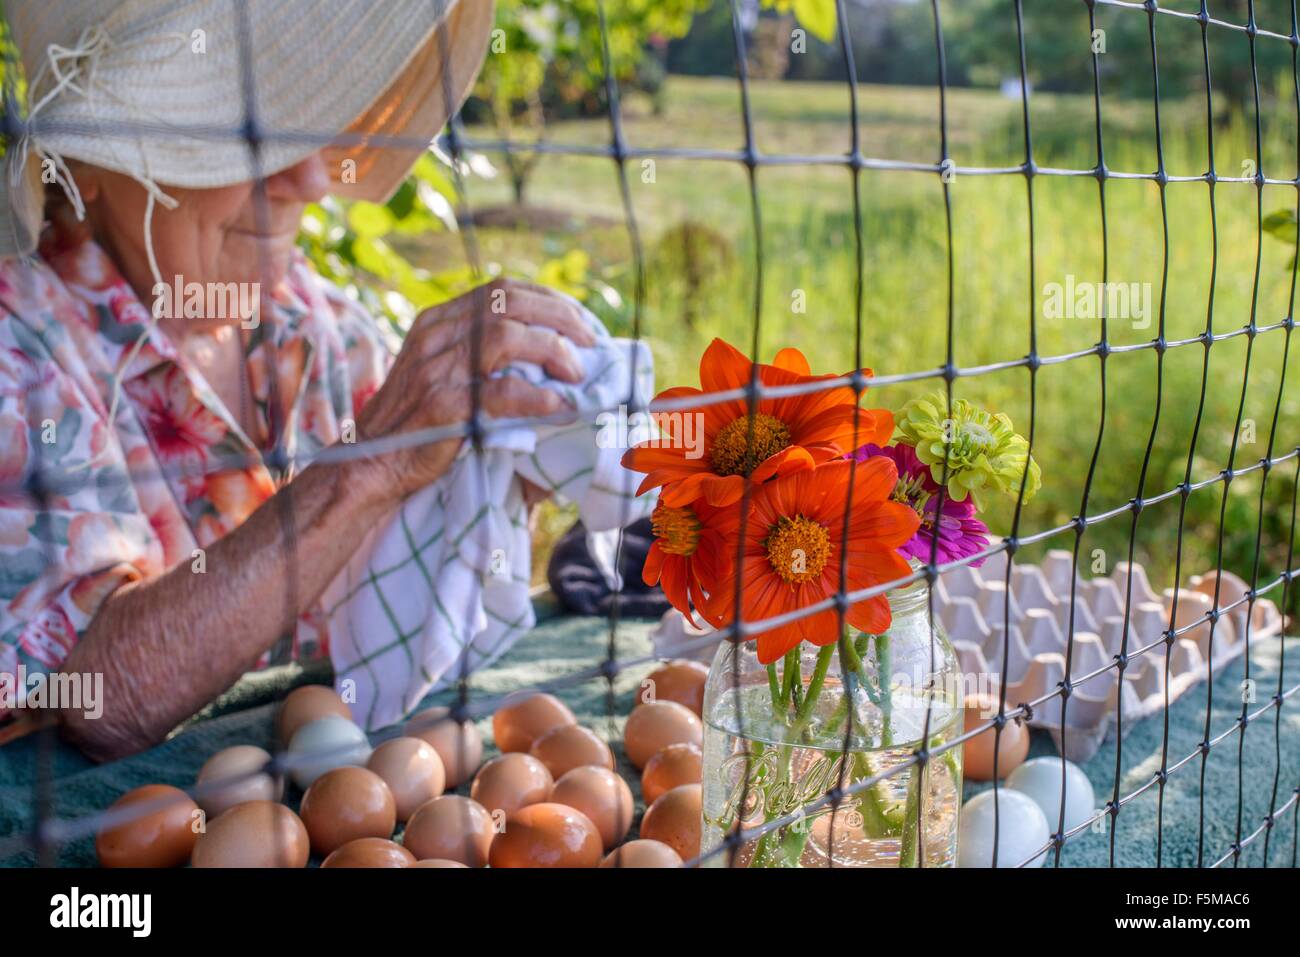 Senior woman wiping eggs on farm Stock Photo